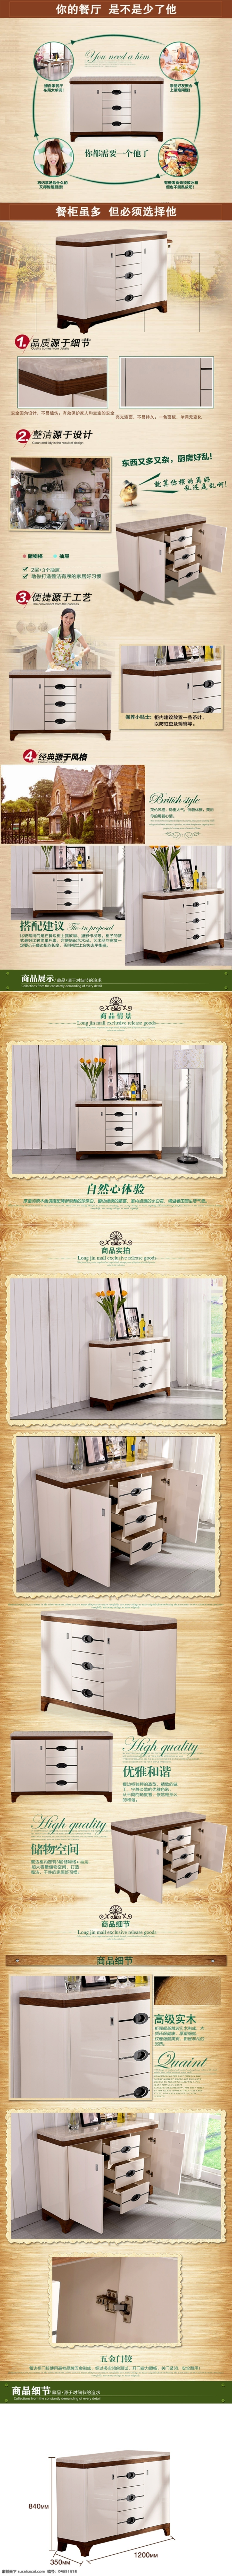 餐边柜 现代 简约 烤漆 茶水 柜 碗柜 简易 酒柜 现代简约 厨房储物柜 白色